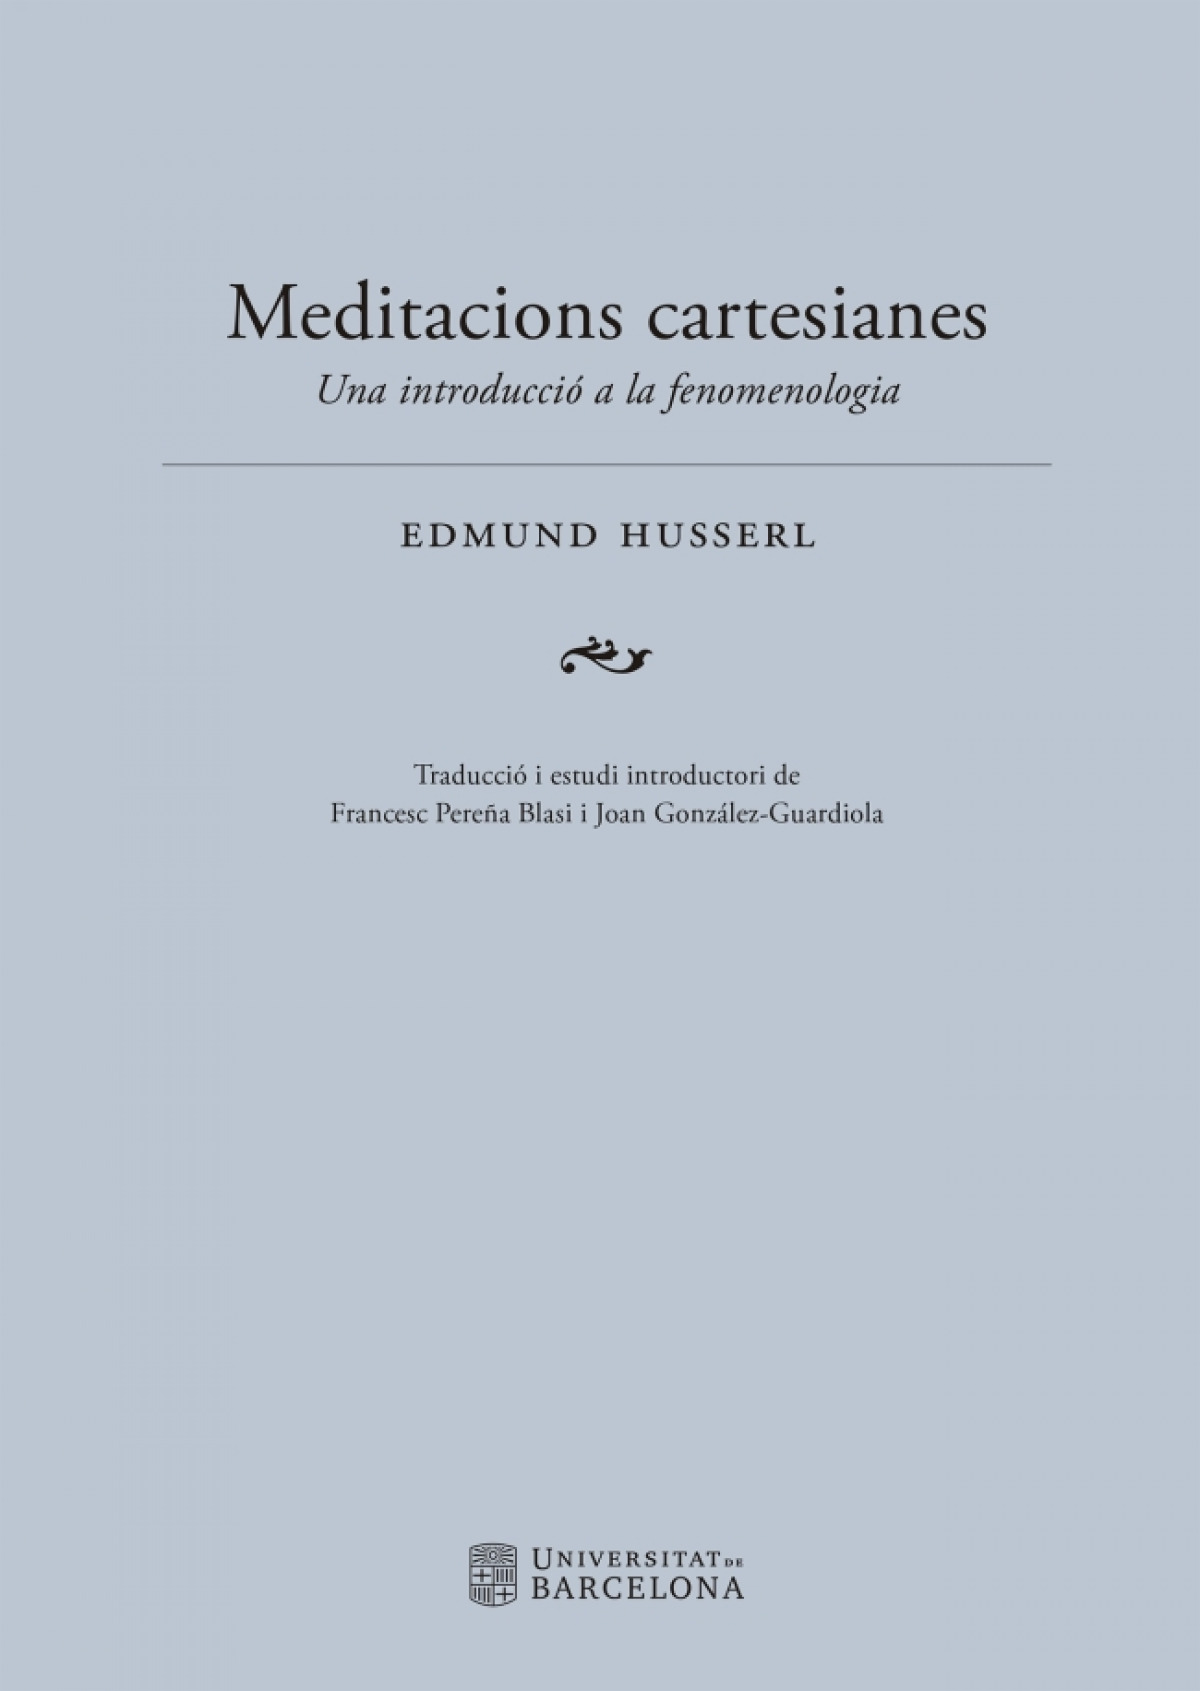 Meditacions cartesianes. una introducció a la fenomenologia - Husserl, Edmund